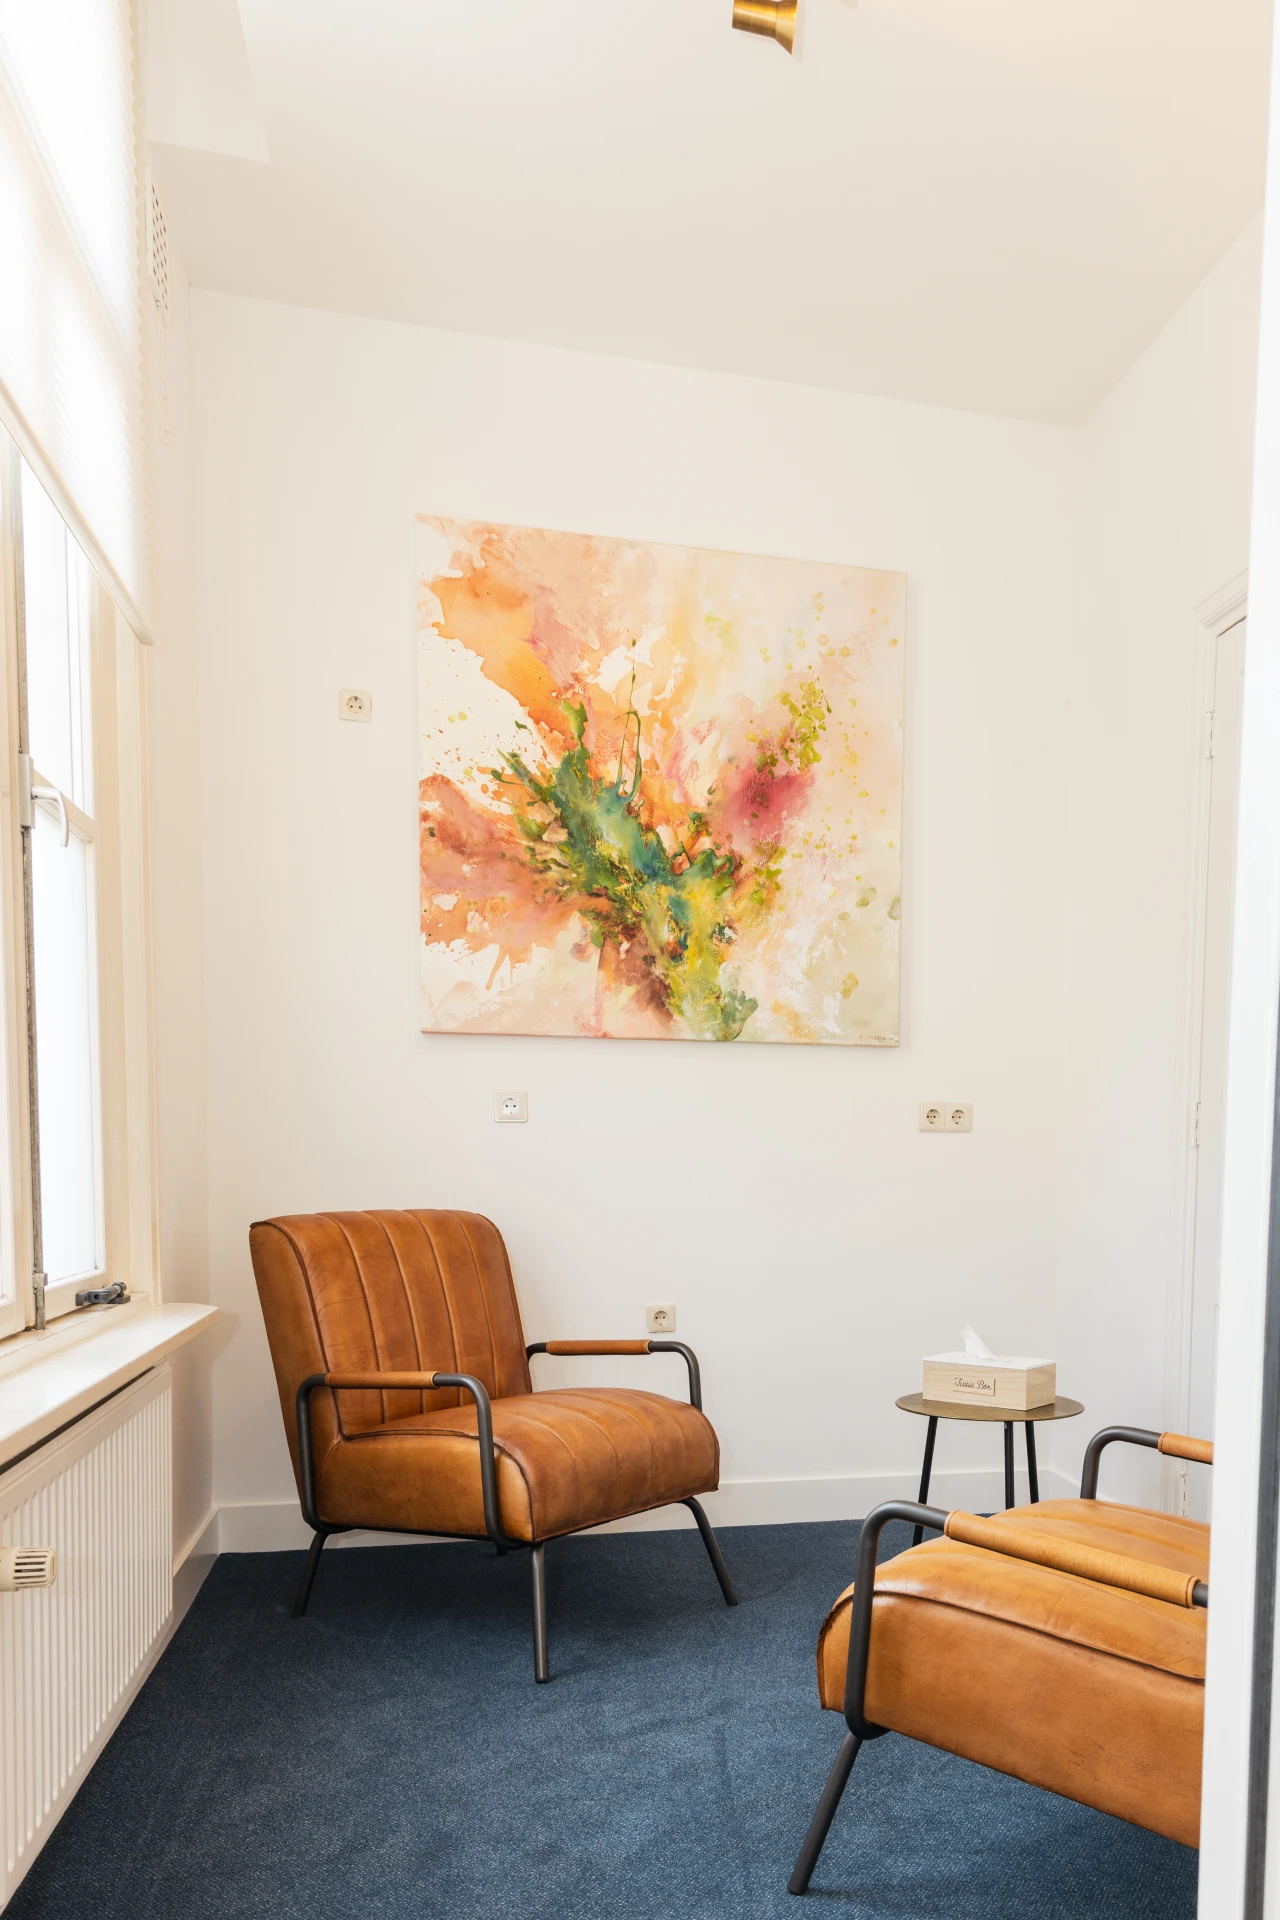 Behandelkamer van CACN Verslavingszorg met licht interieur, schilderij en 2 leren fauteuils.